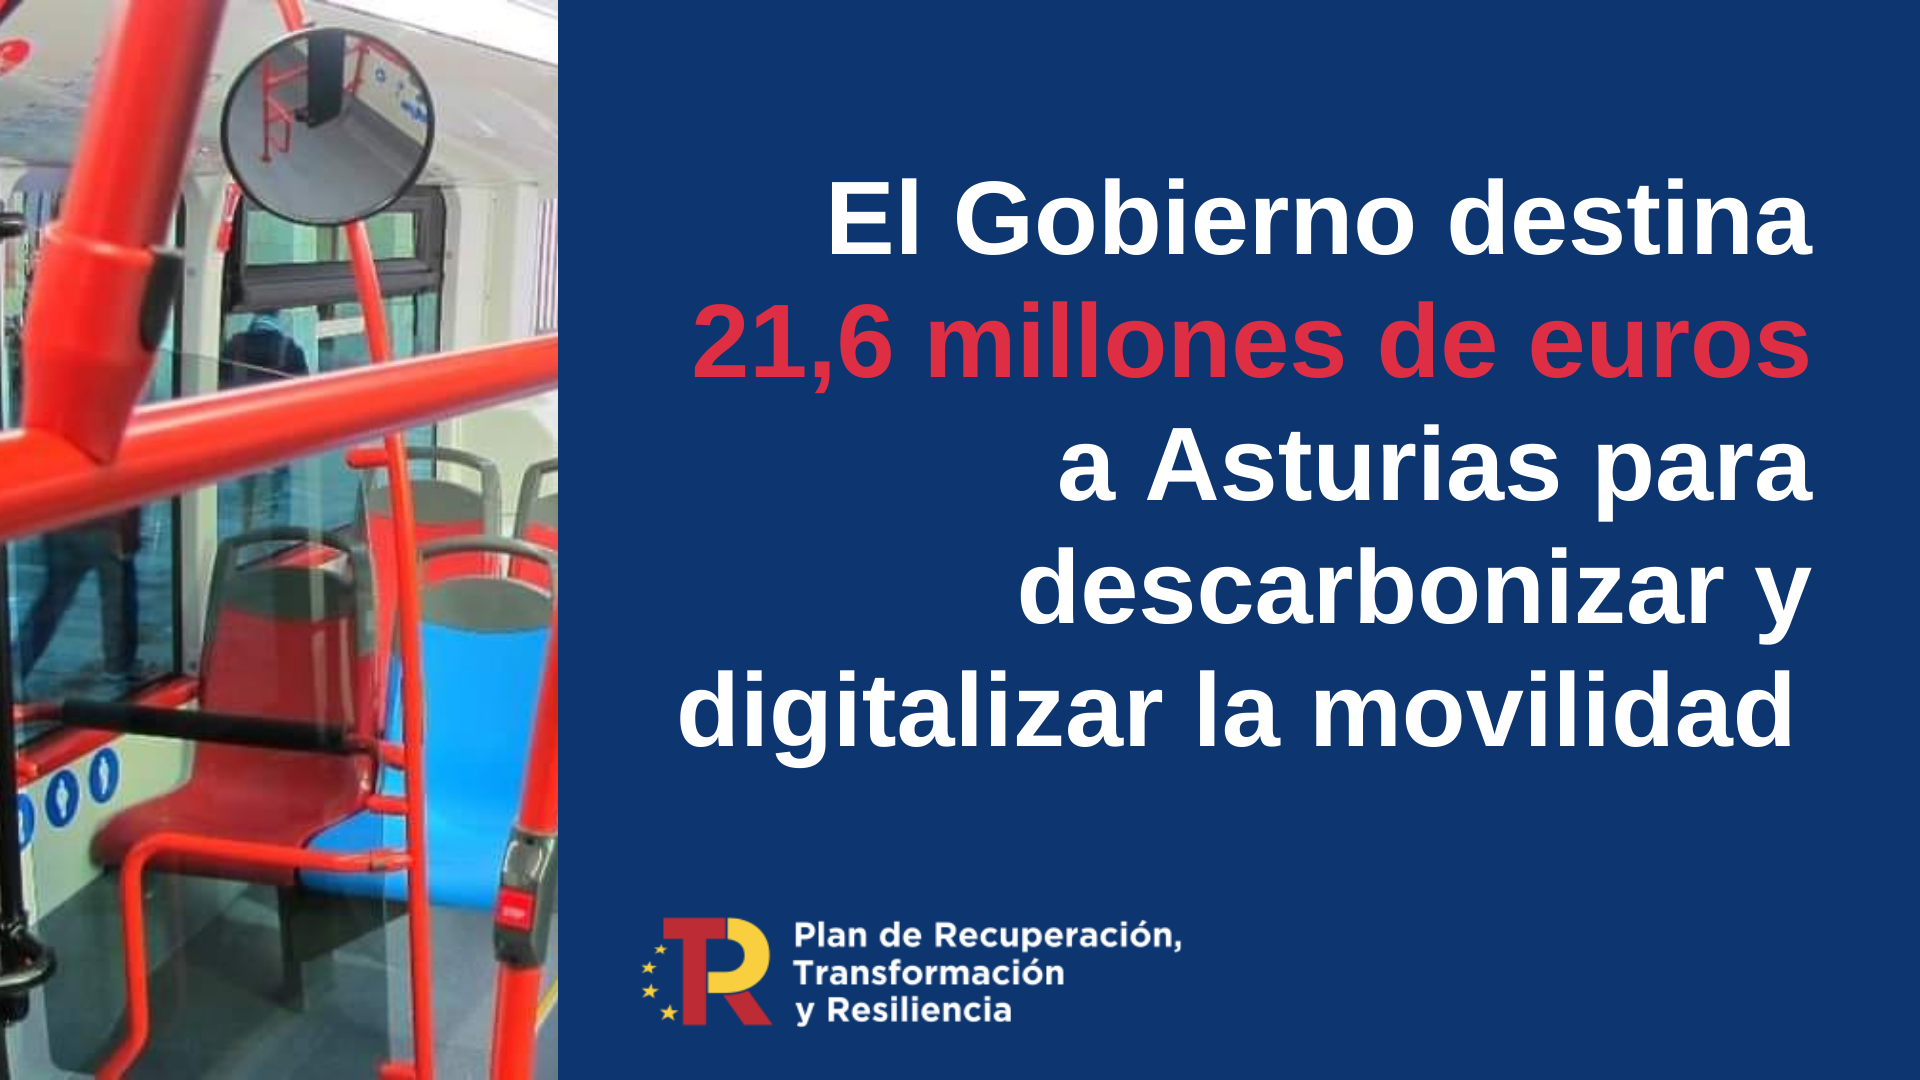 El Gobierno destina más de 21,6 millones de euros a Asturias para descarbonizar y digitalizar la movilidad 